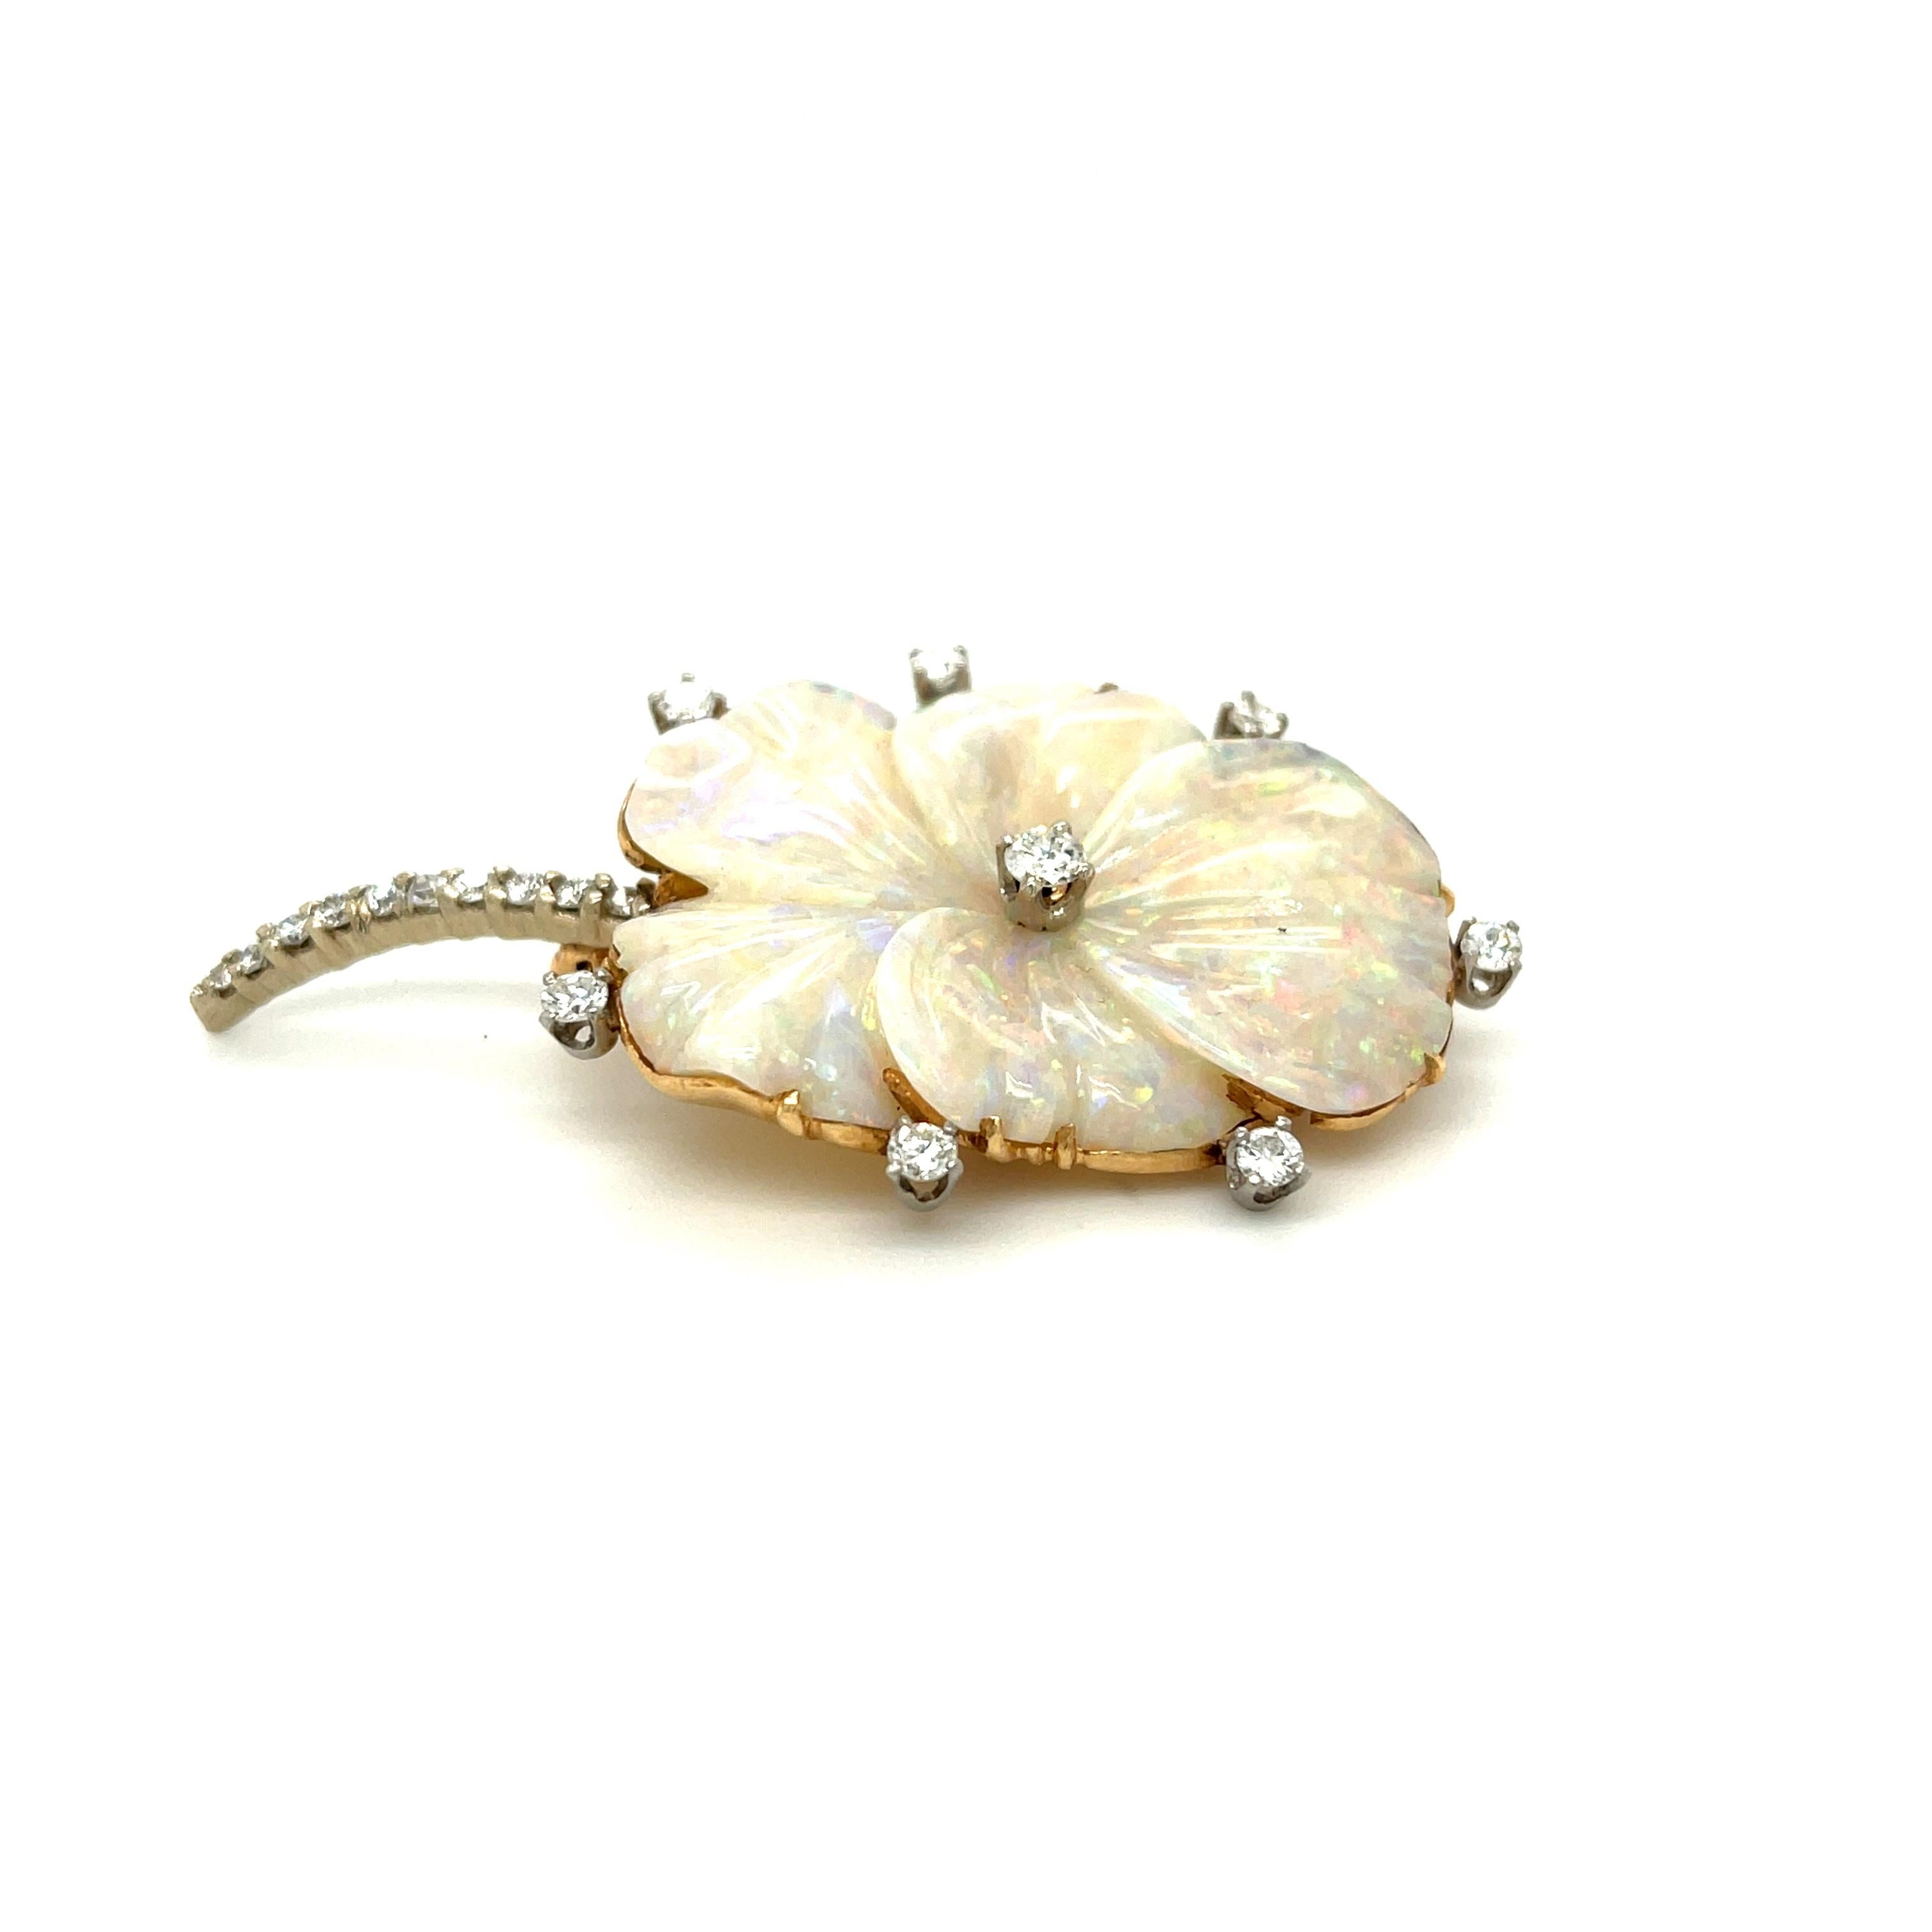 Gewöhnliche Brosche aus geschnitztem Opal mit Diamantbesatz, um 1960. Dieser wunderschön gestaltete Opal ist in Form einer Stiefmütterchenblüte geschnitzt. Stiefmütterchen haben in der Schmucksymbolik eine große Bedeutung - sie werden oft als